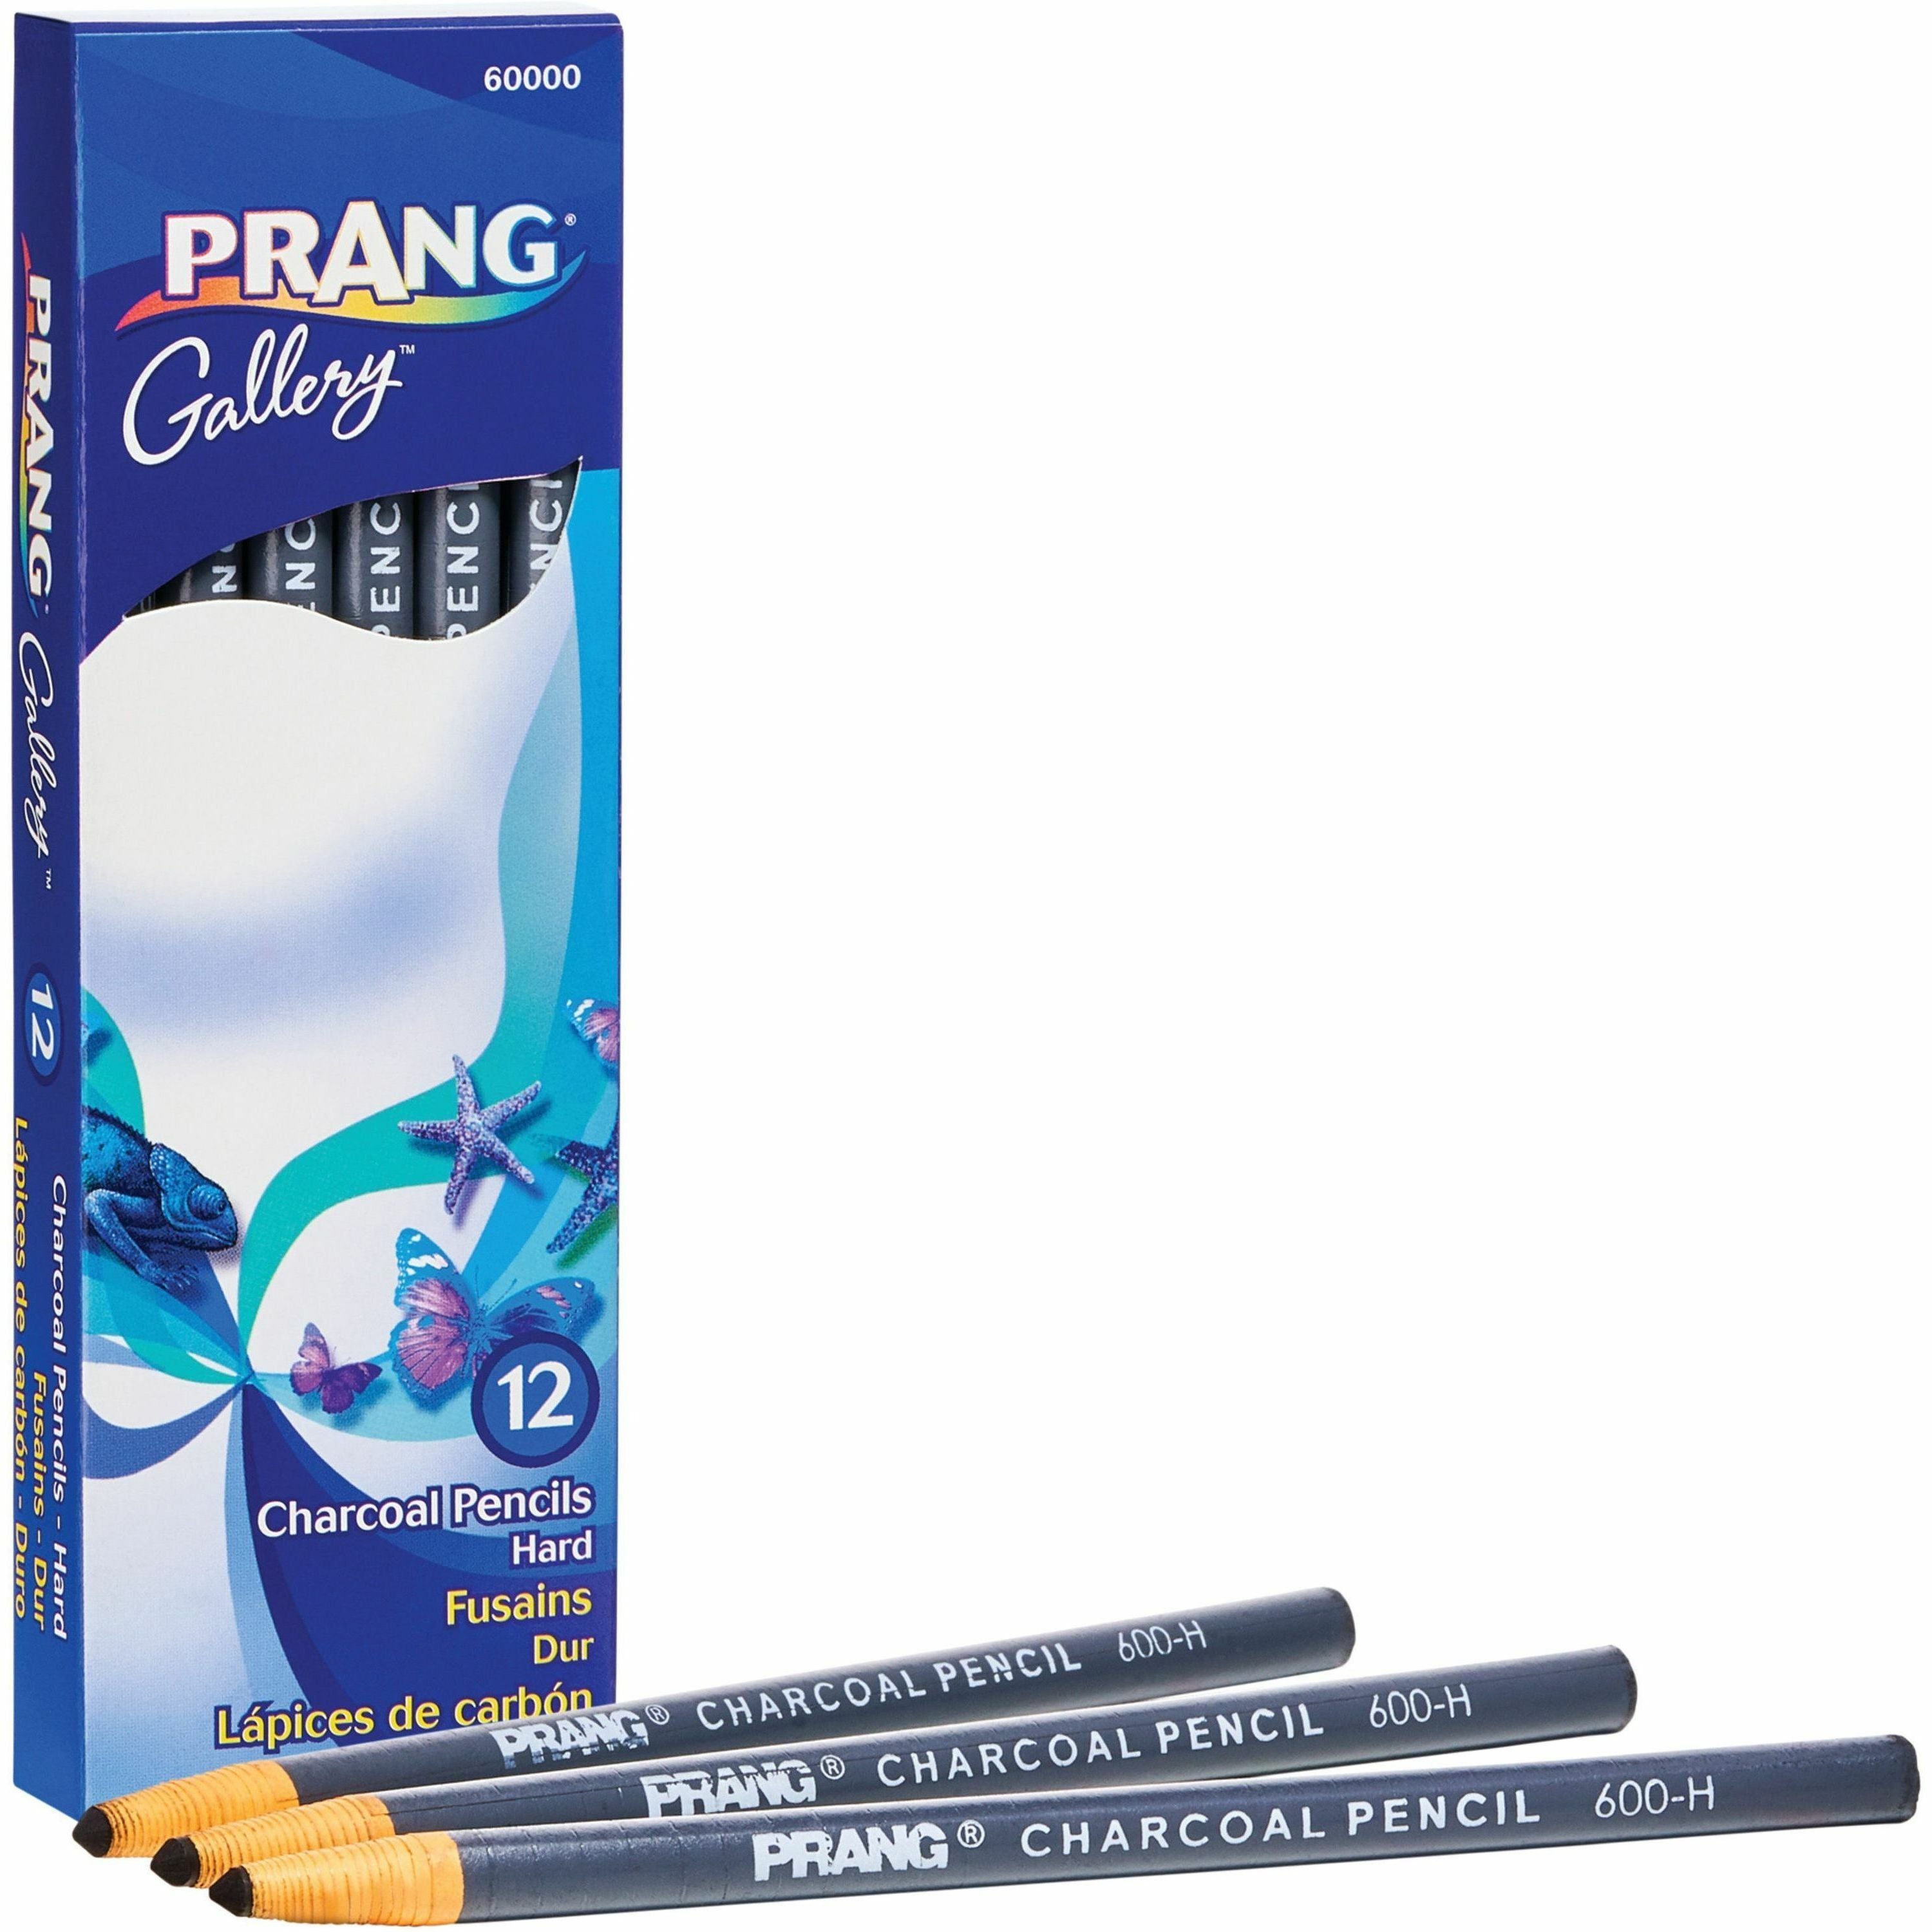 prang-charcoal-pencils-black-lead-12-pack_dixx60000 - 1